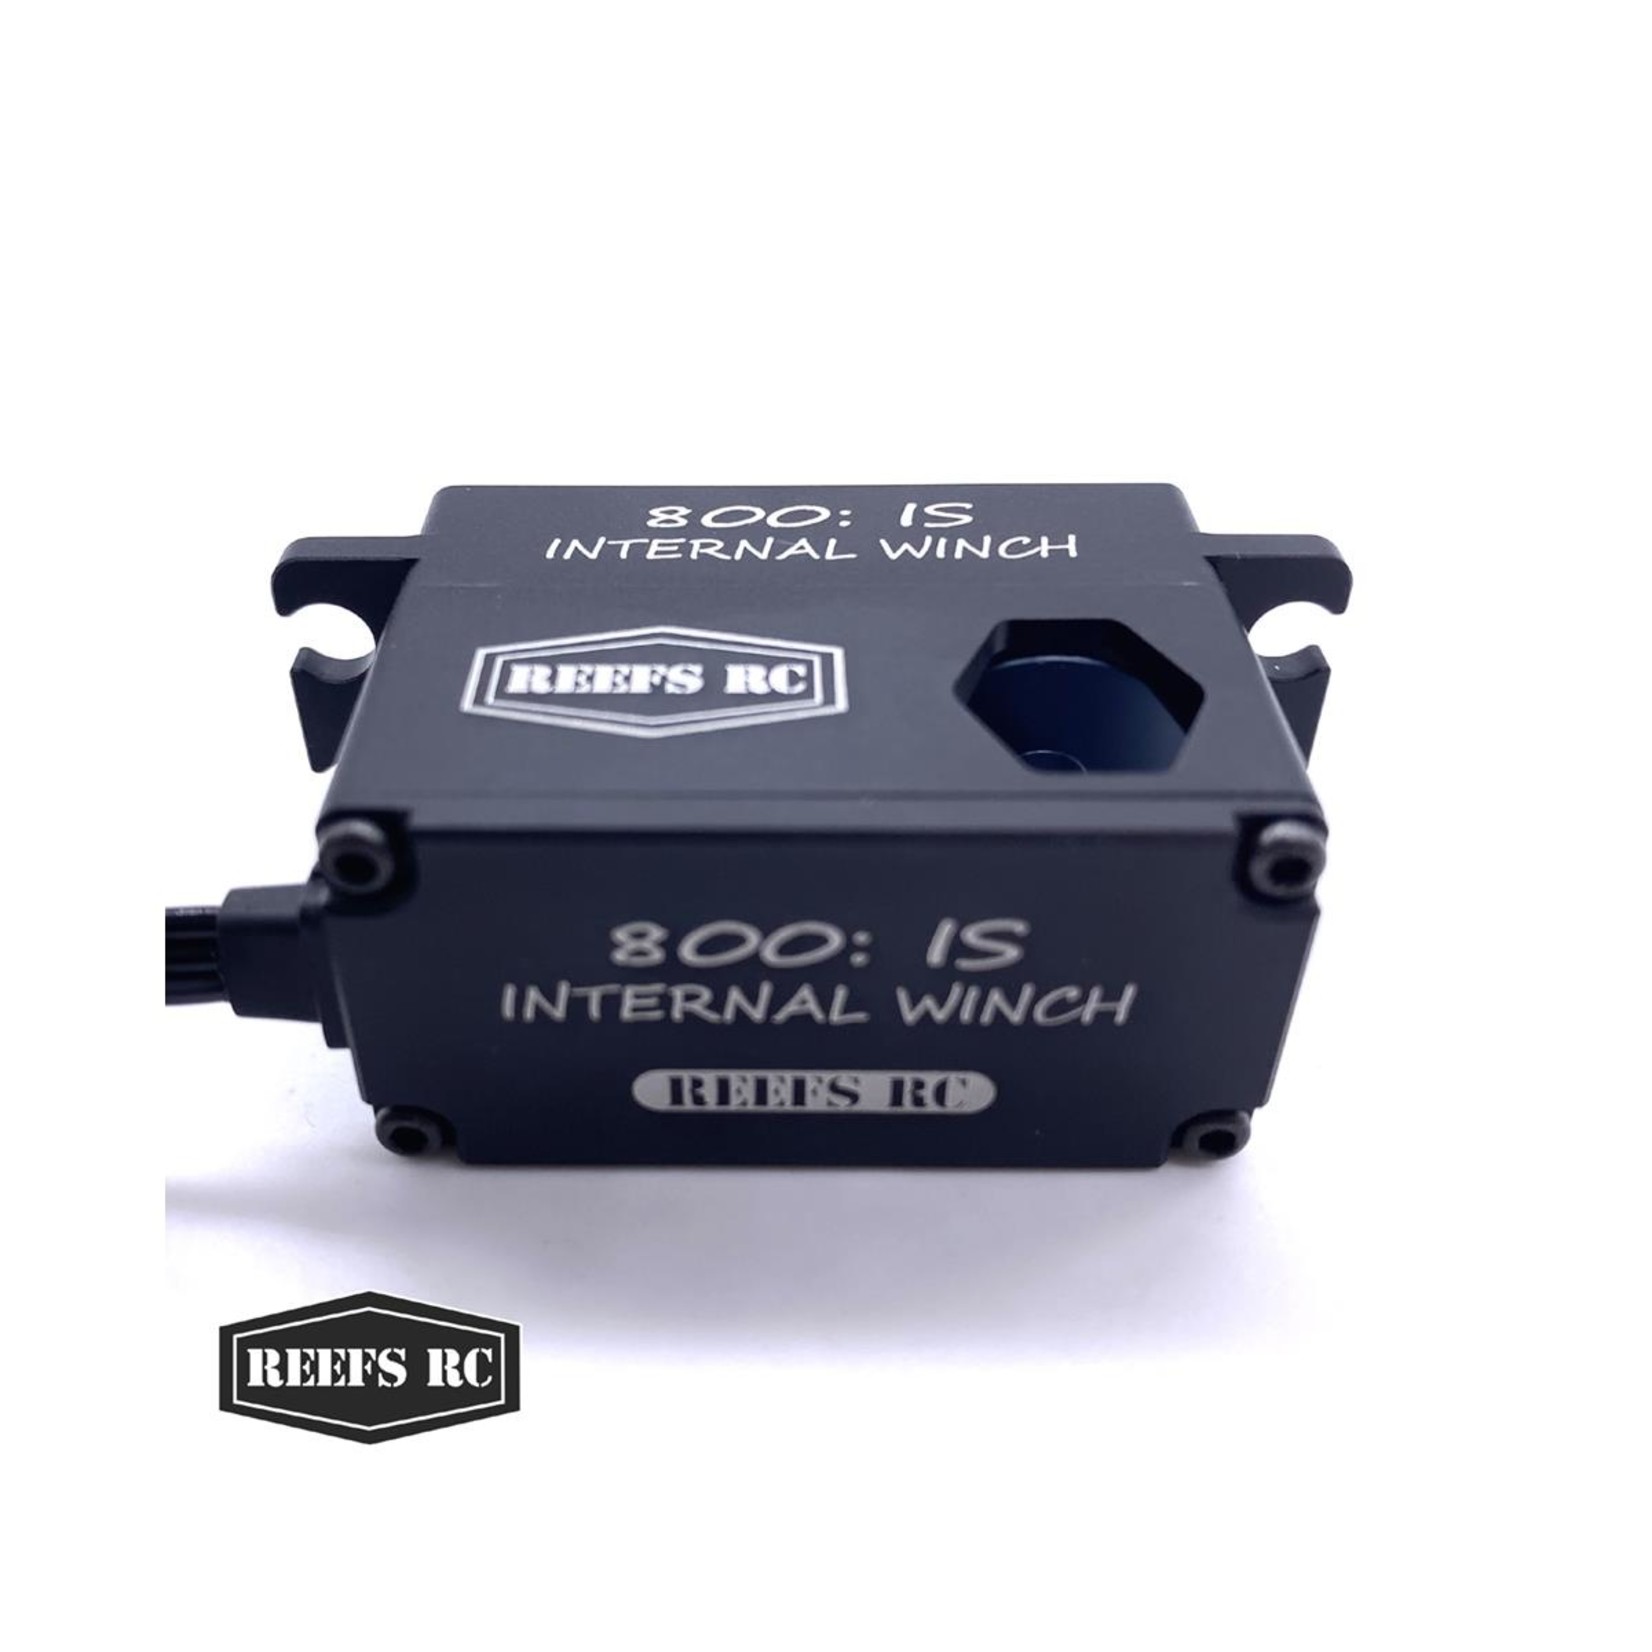 Reefs RC Reefs RC 800:IS Internal Spool LowPro Brushless Servo Winch #REEFS90